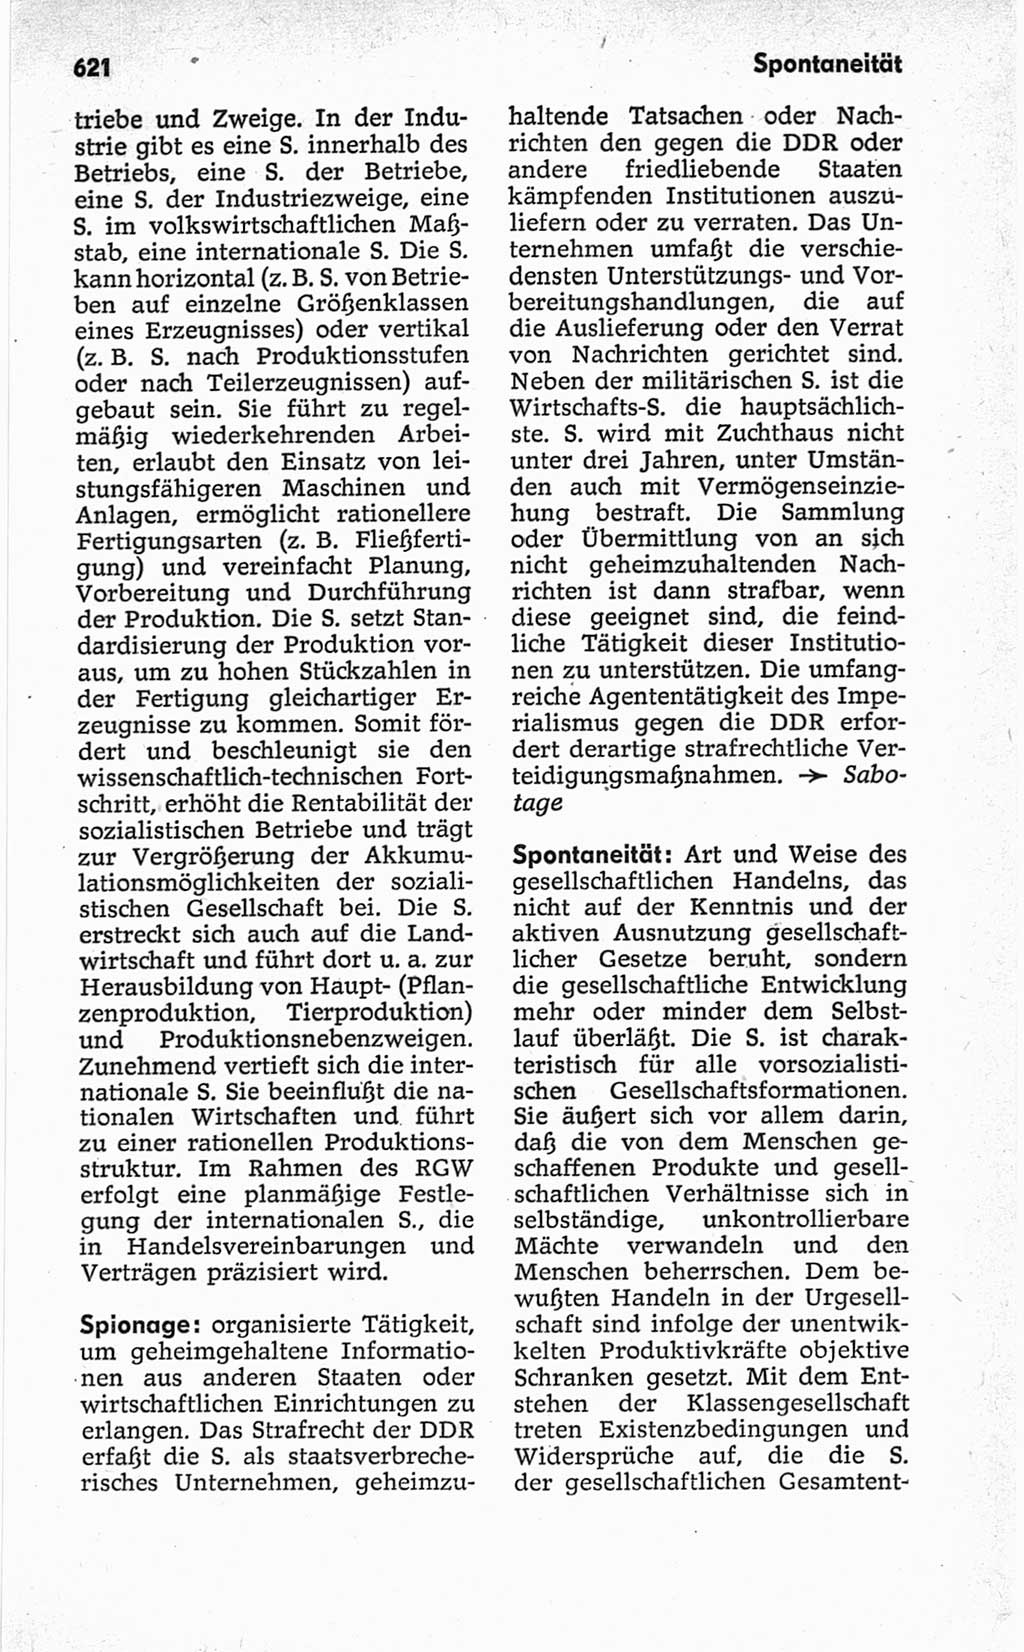 Kleines politisches Wörterbuch [Deutsche Demokratische Republik (DDR)] 1967, Seite 621 (Kl. pol. Wb. DDR 1967, S. 621)